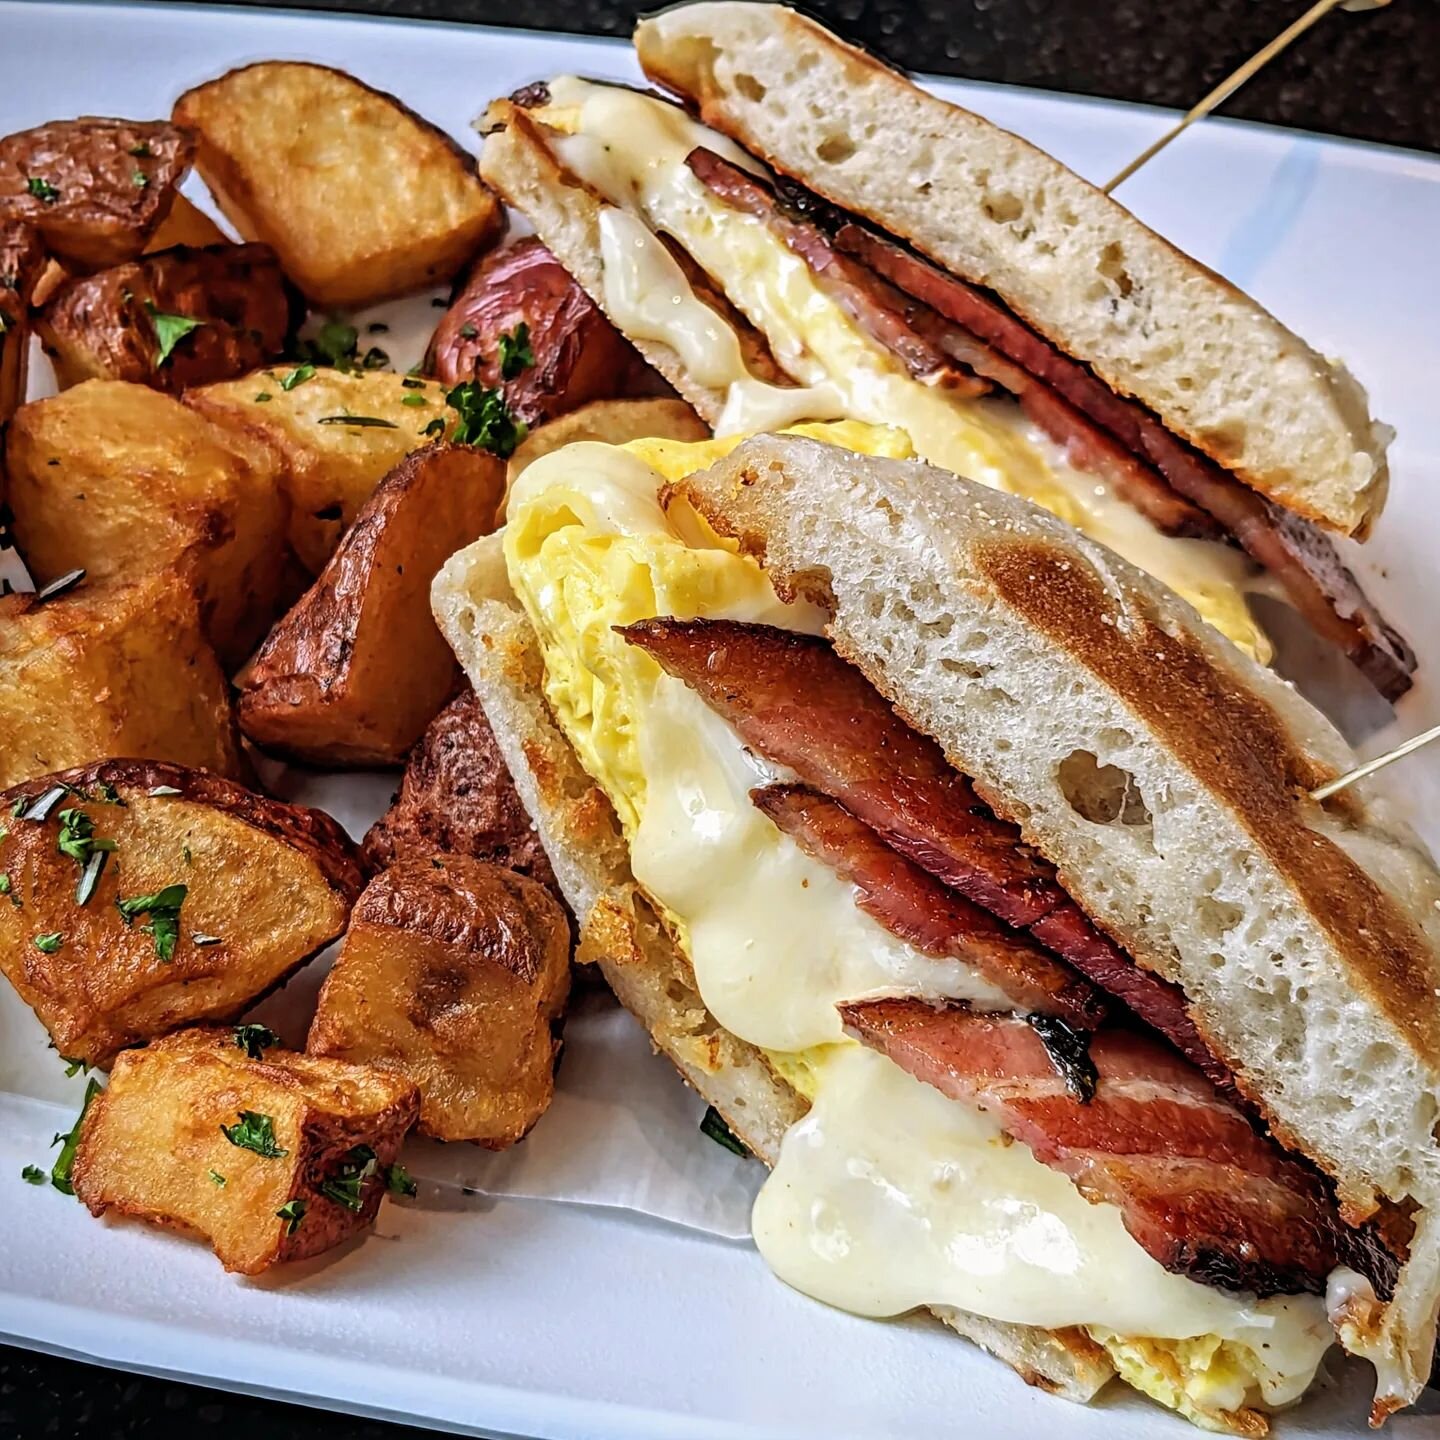 Classic Bacon Breakfast Sandwich

#lunchbreak #brunchtime #breakfastofchampions #bostonfoodies #bostonma #bostonsofinstagram #breakfasttime☕️ #bostonstyle #cambridgelife #brunchspot #foodie #instafood #foodporn #bostonfoodiesquad #bostonfood #somervi